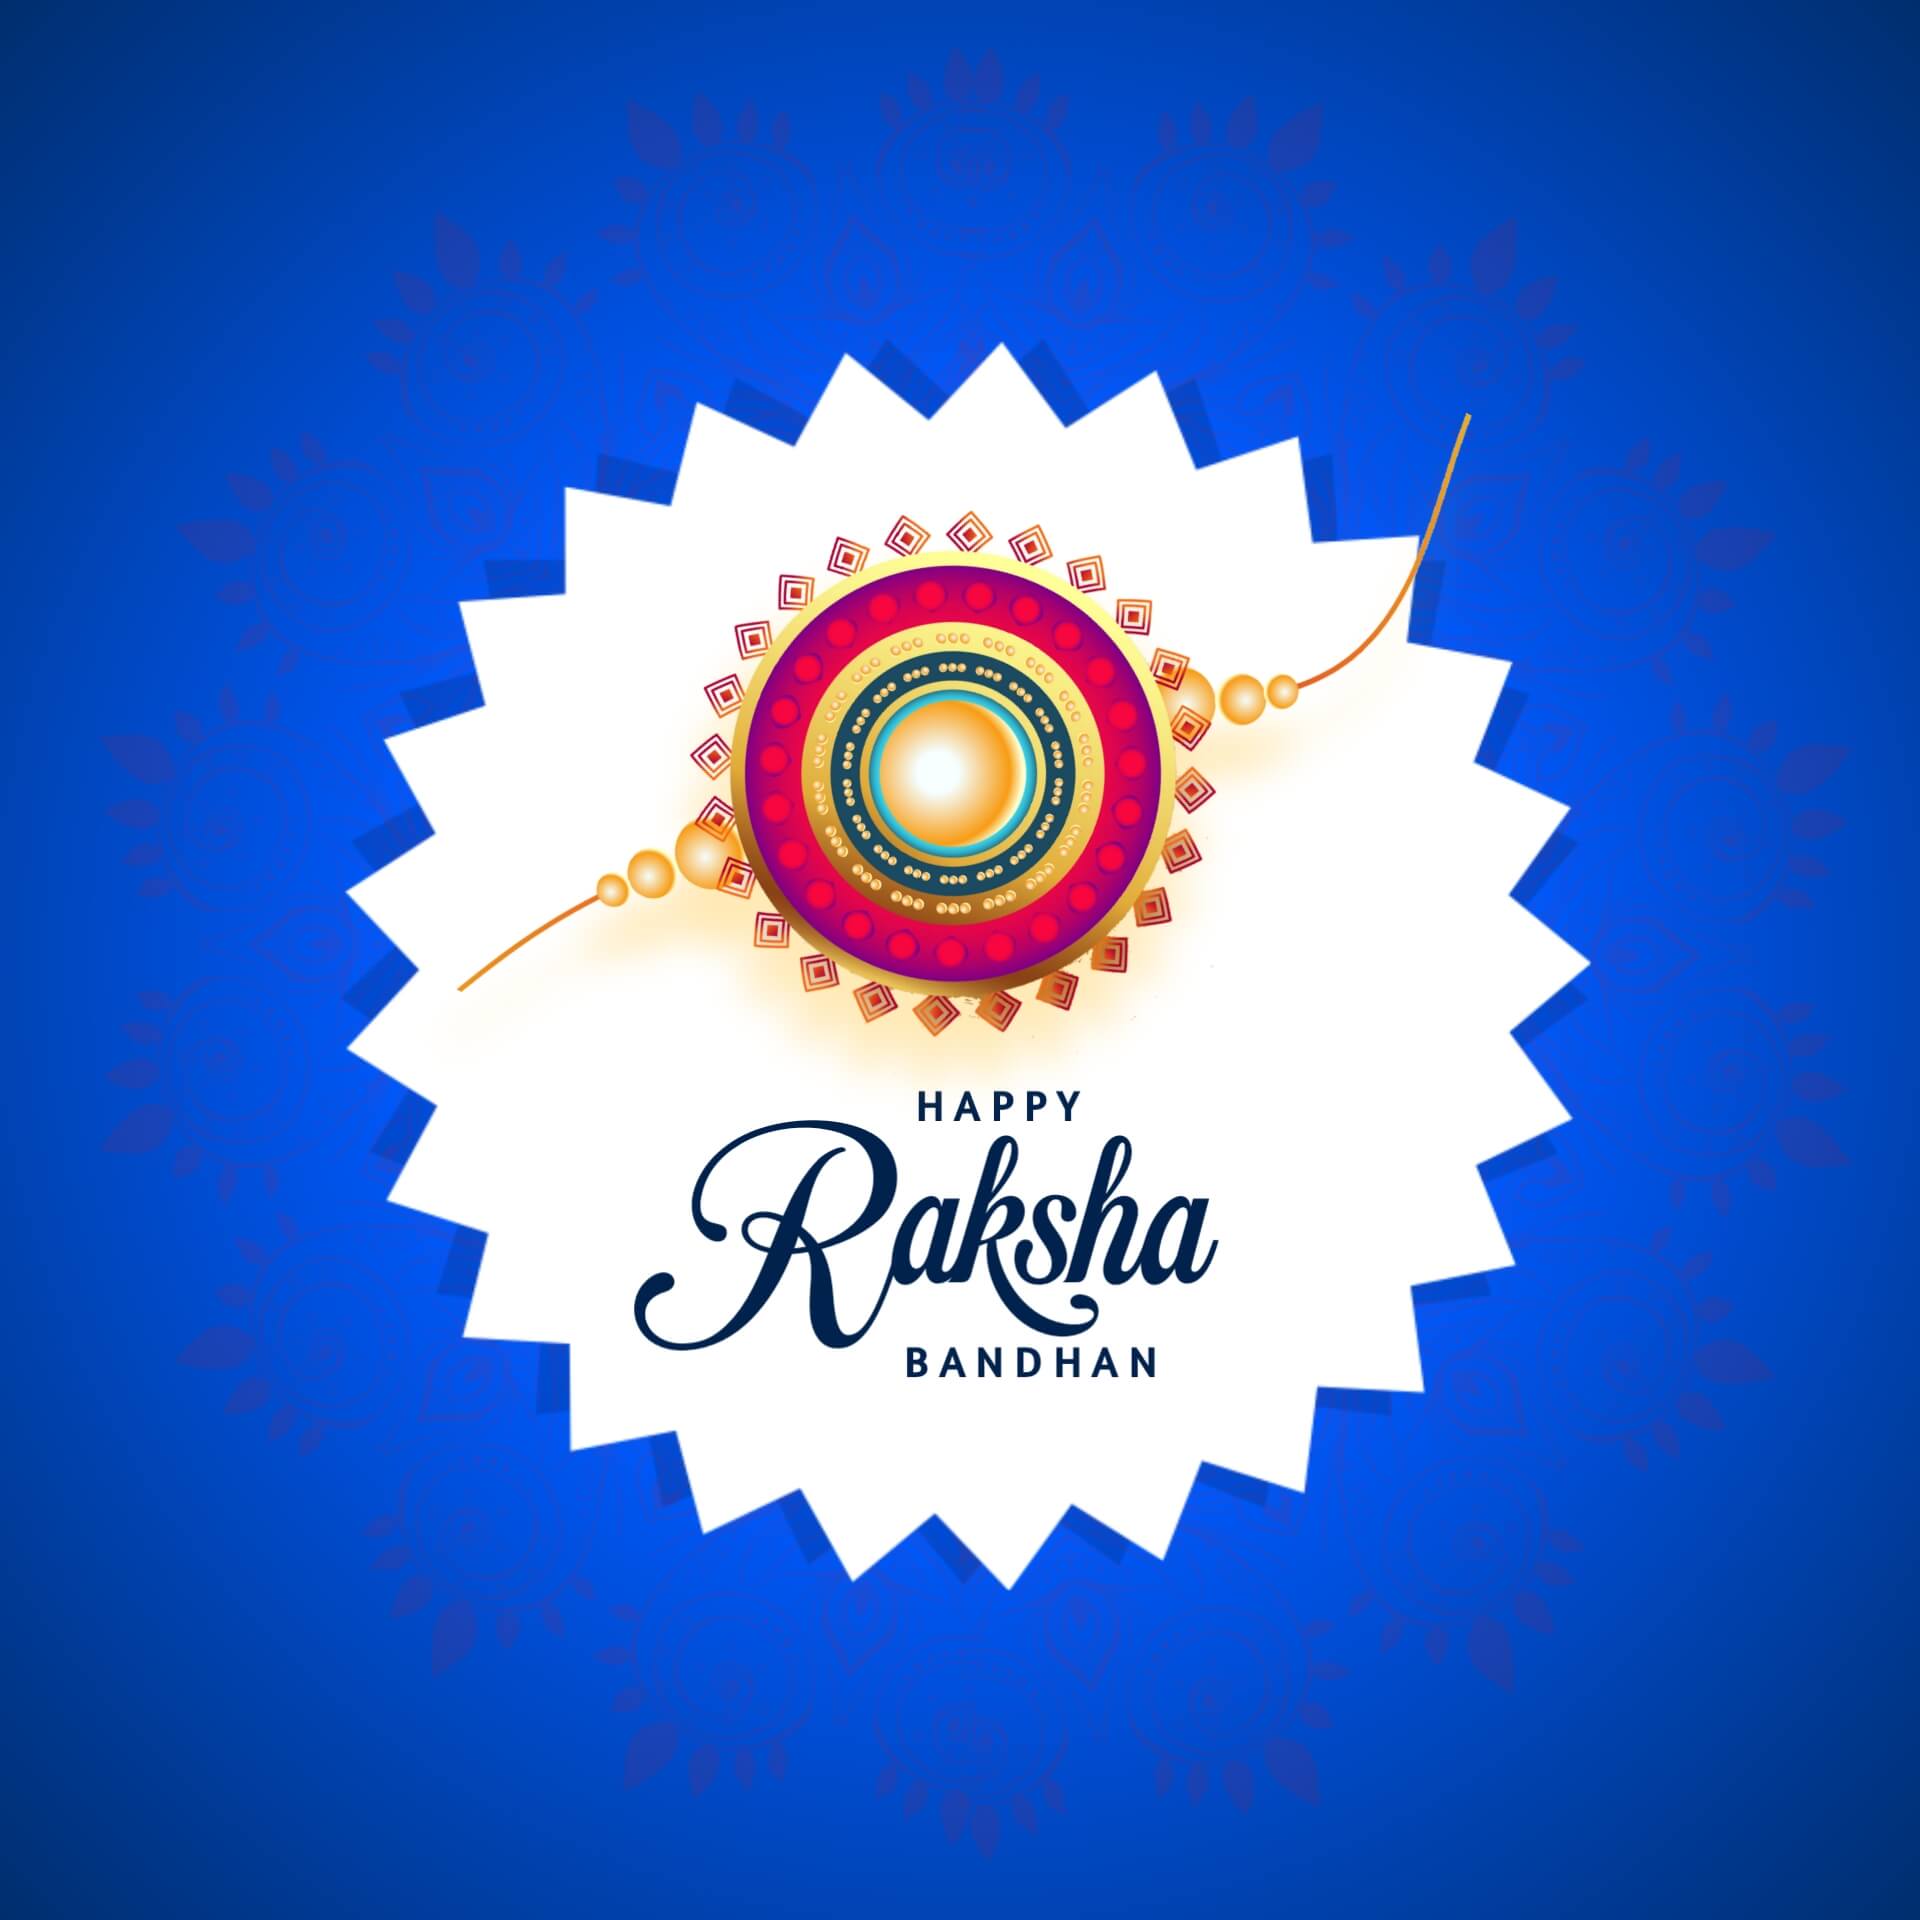 Happy Raksha Bandhan Image with Blue Background